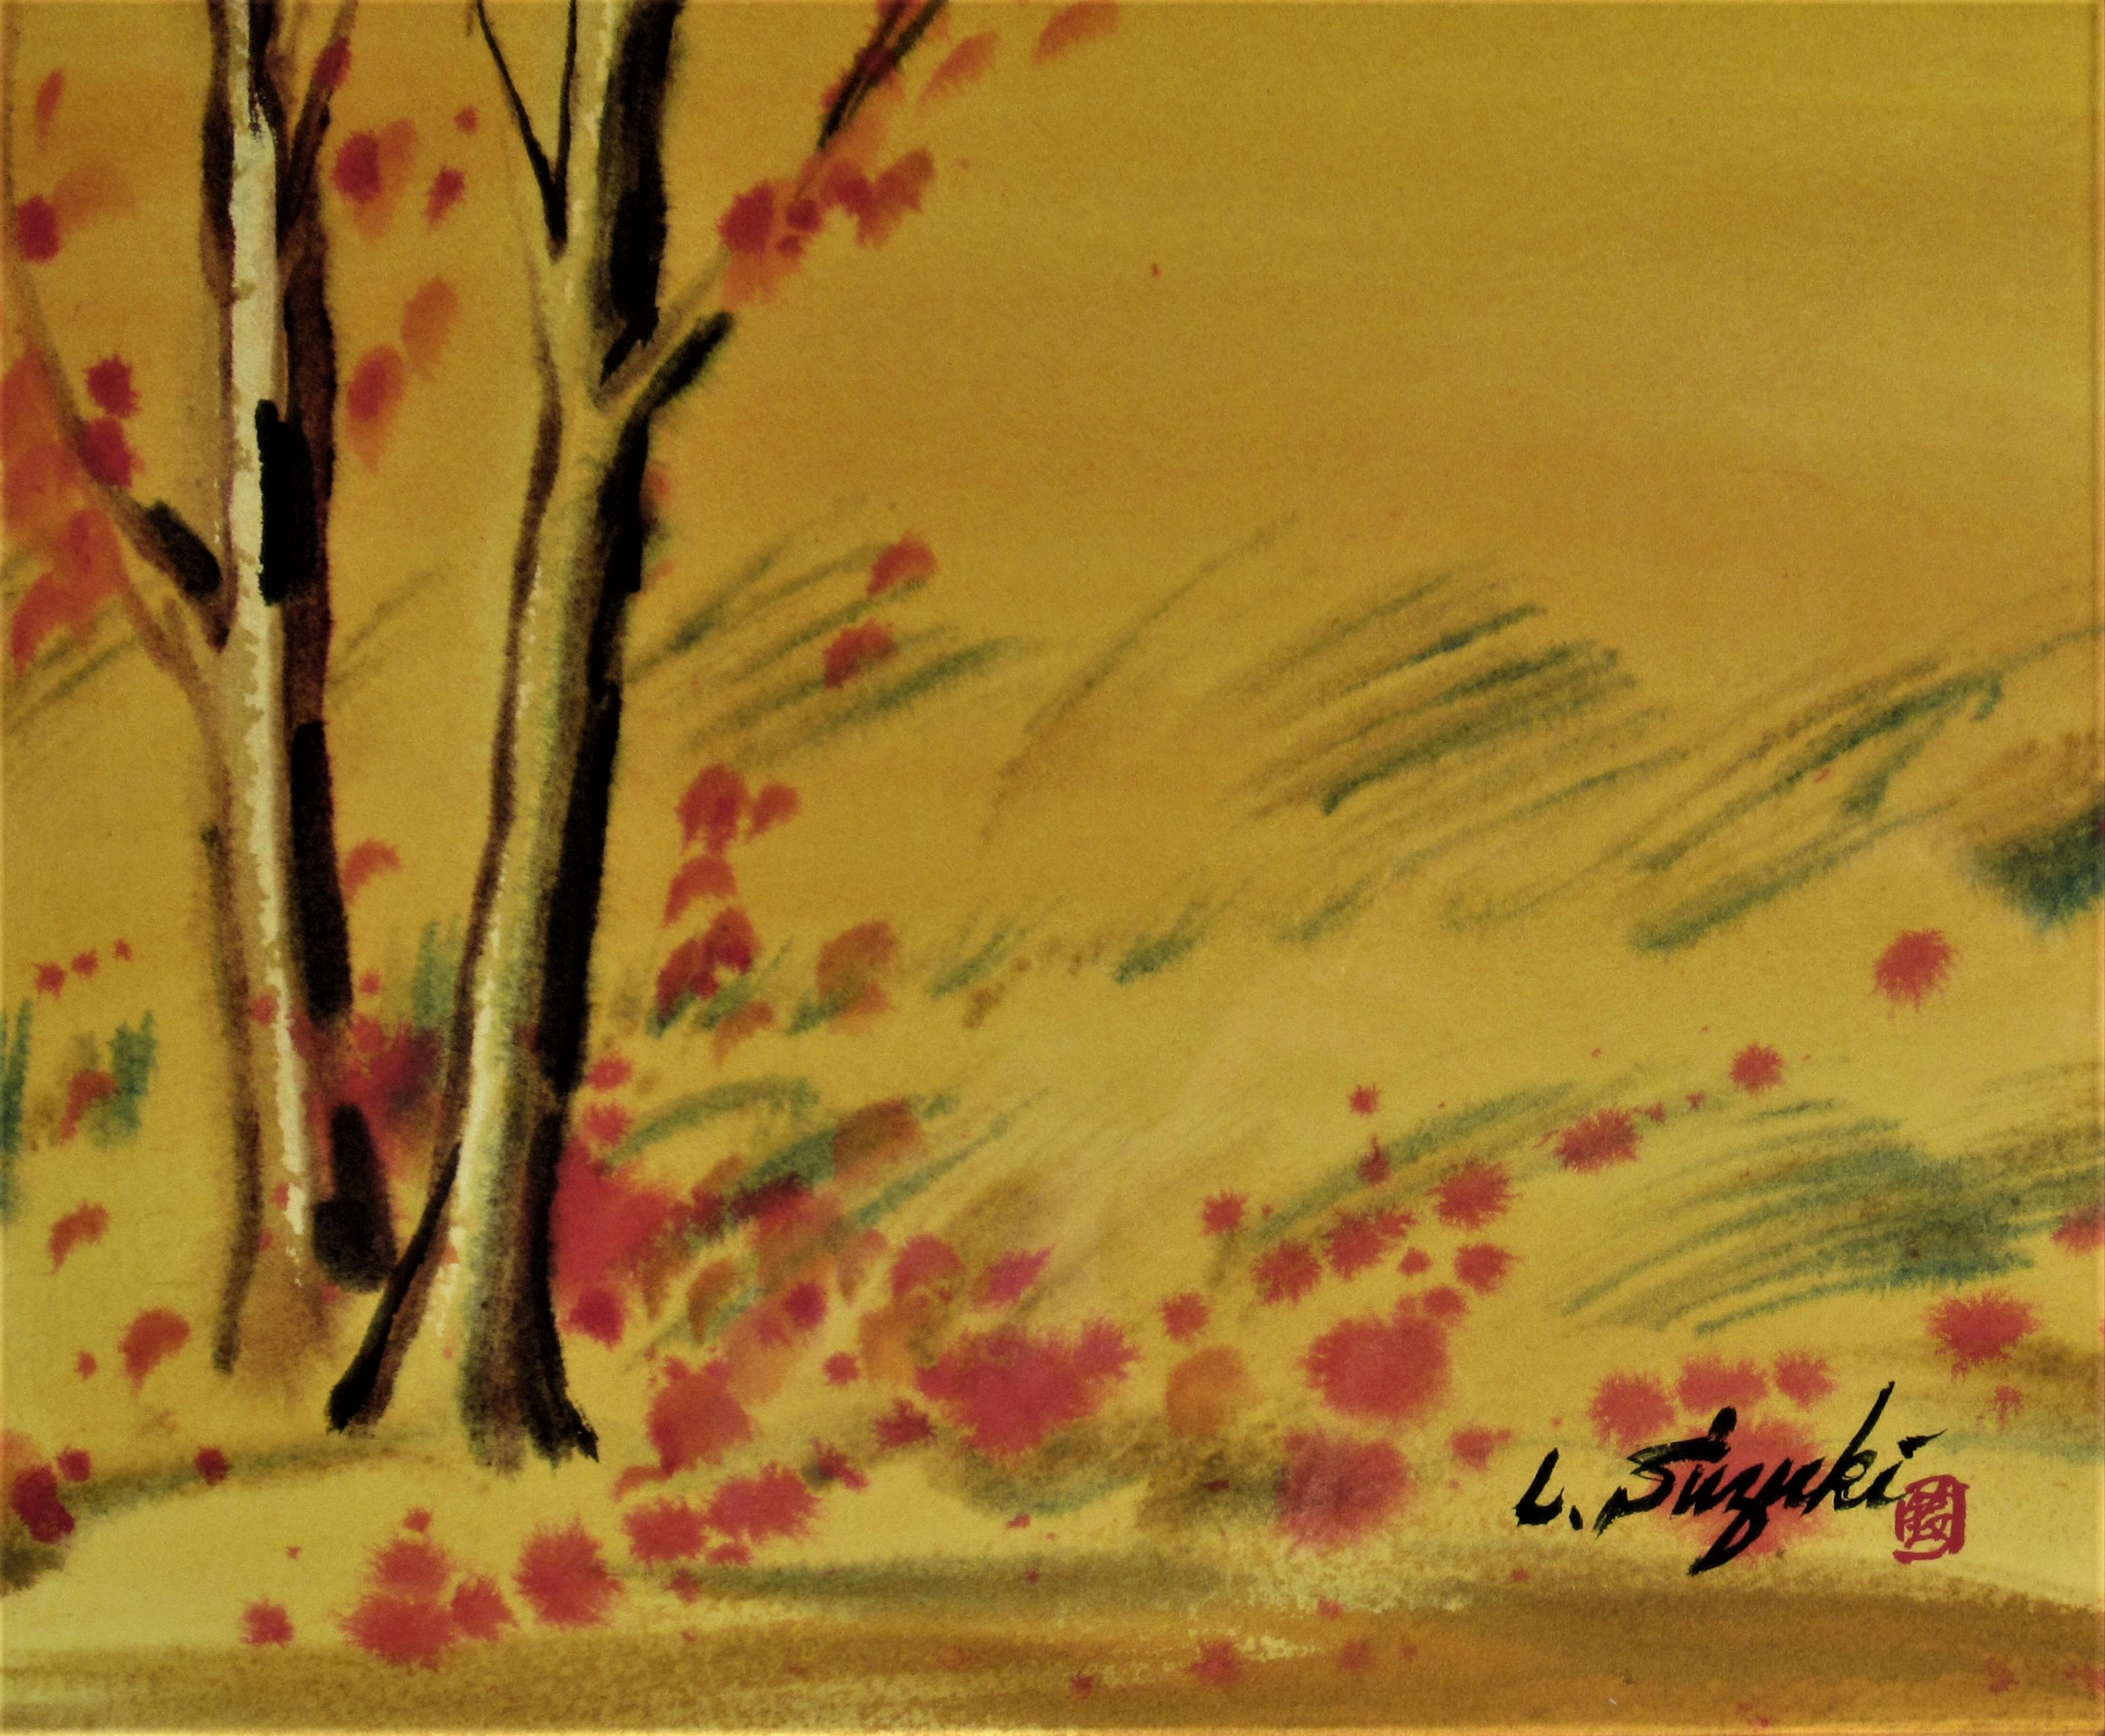 Landscape with Barn - Impressionist Art by Lewis Suzuki